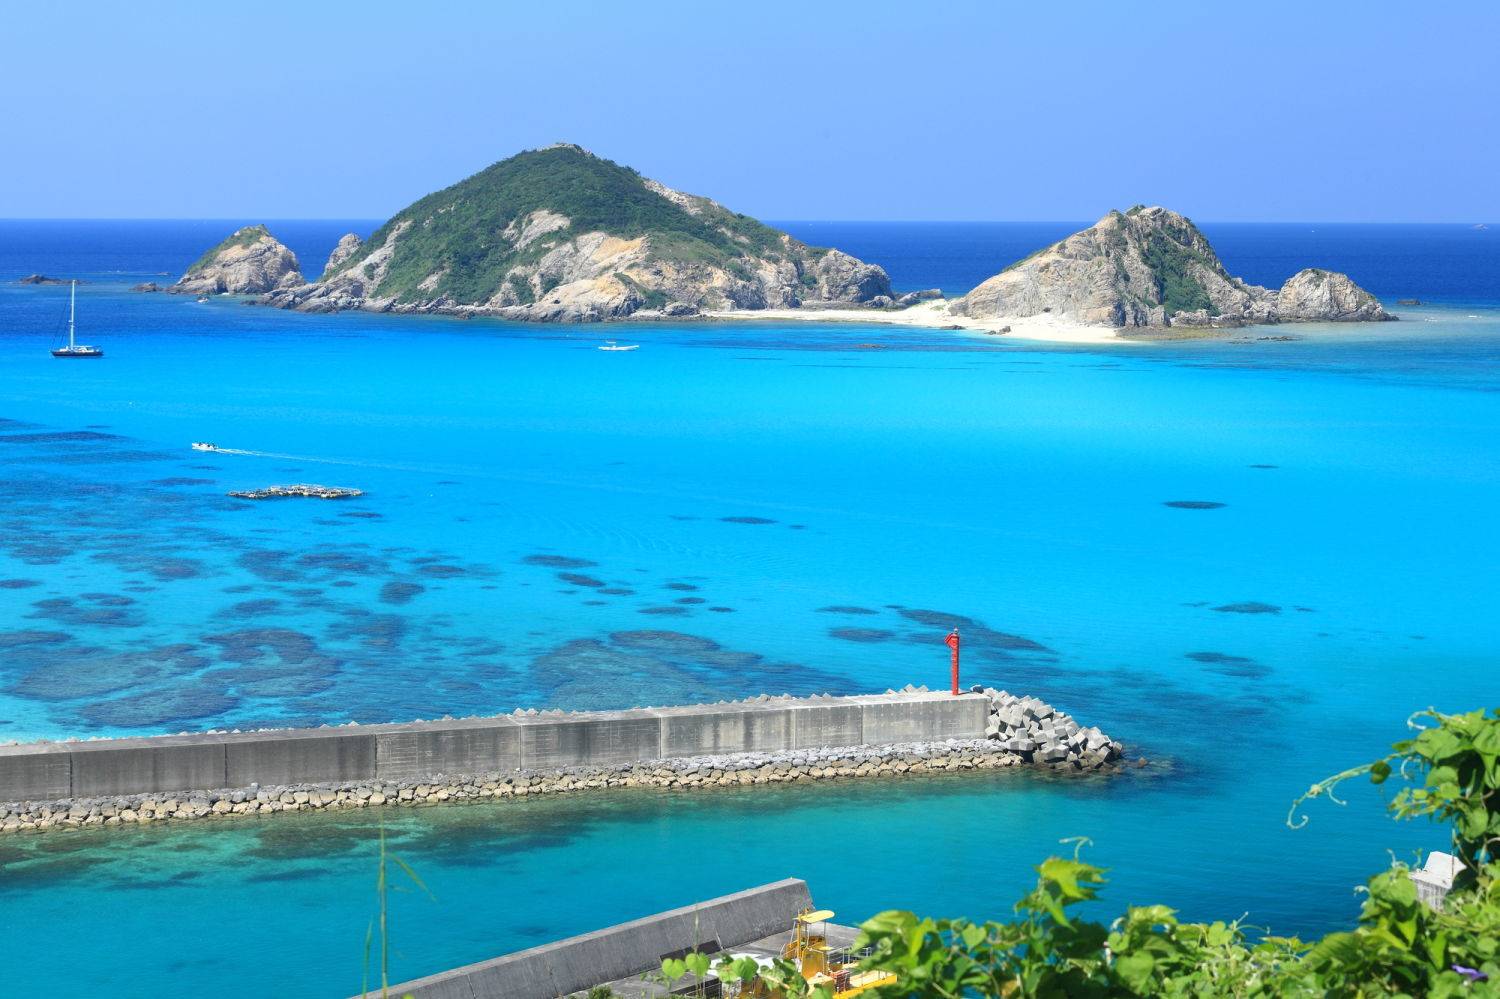 渡嘉敷島の画像ギャラリー39選 息をのむほど美しいこの島は那覇から日帰りが可能 Jptrp Com